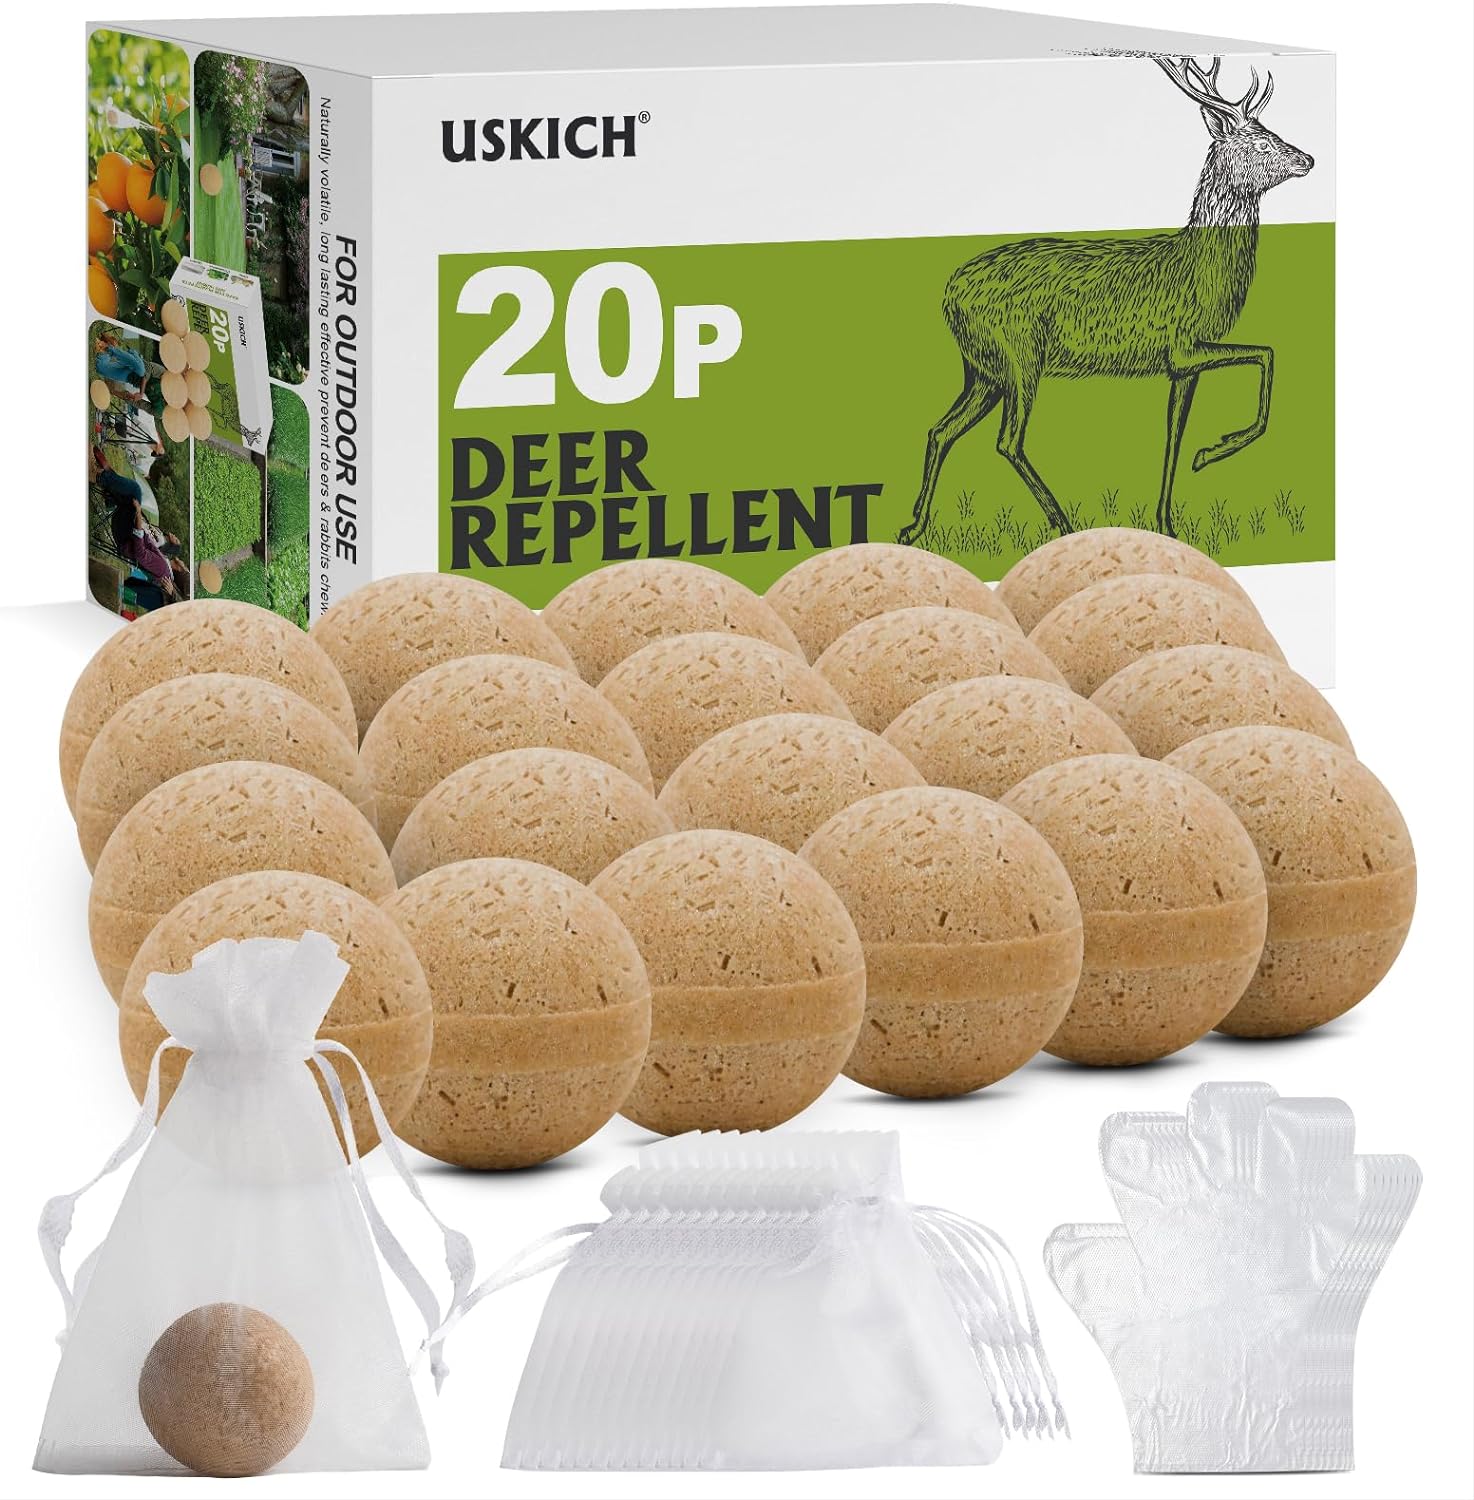 20 Pack Deer Repellent, Rabbit Repellent, Deer Deterrent, Powerful Deer Repellent Outdoor for Plants, Rabbit Repellant for Garden, Deer Repellent - 1